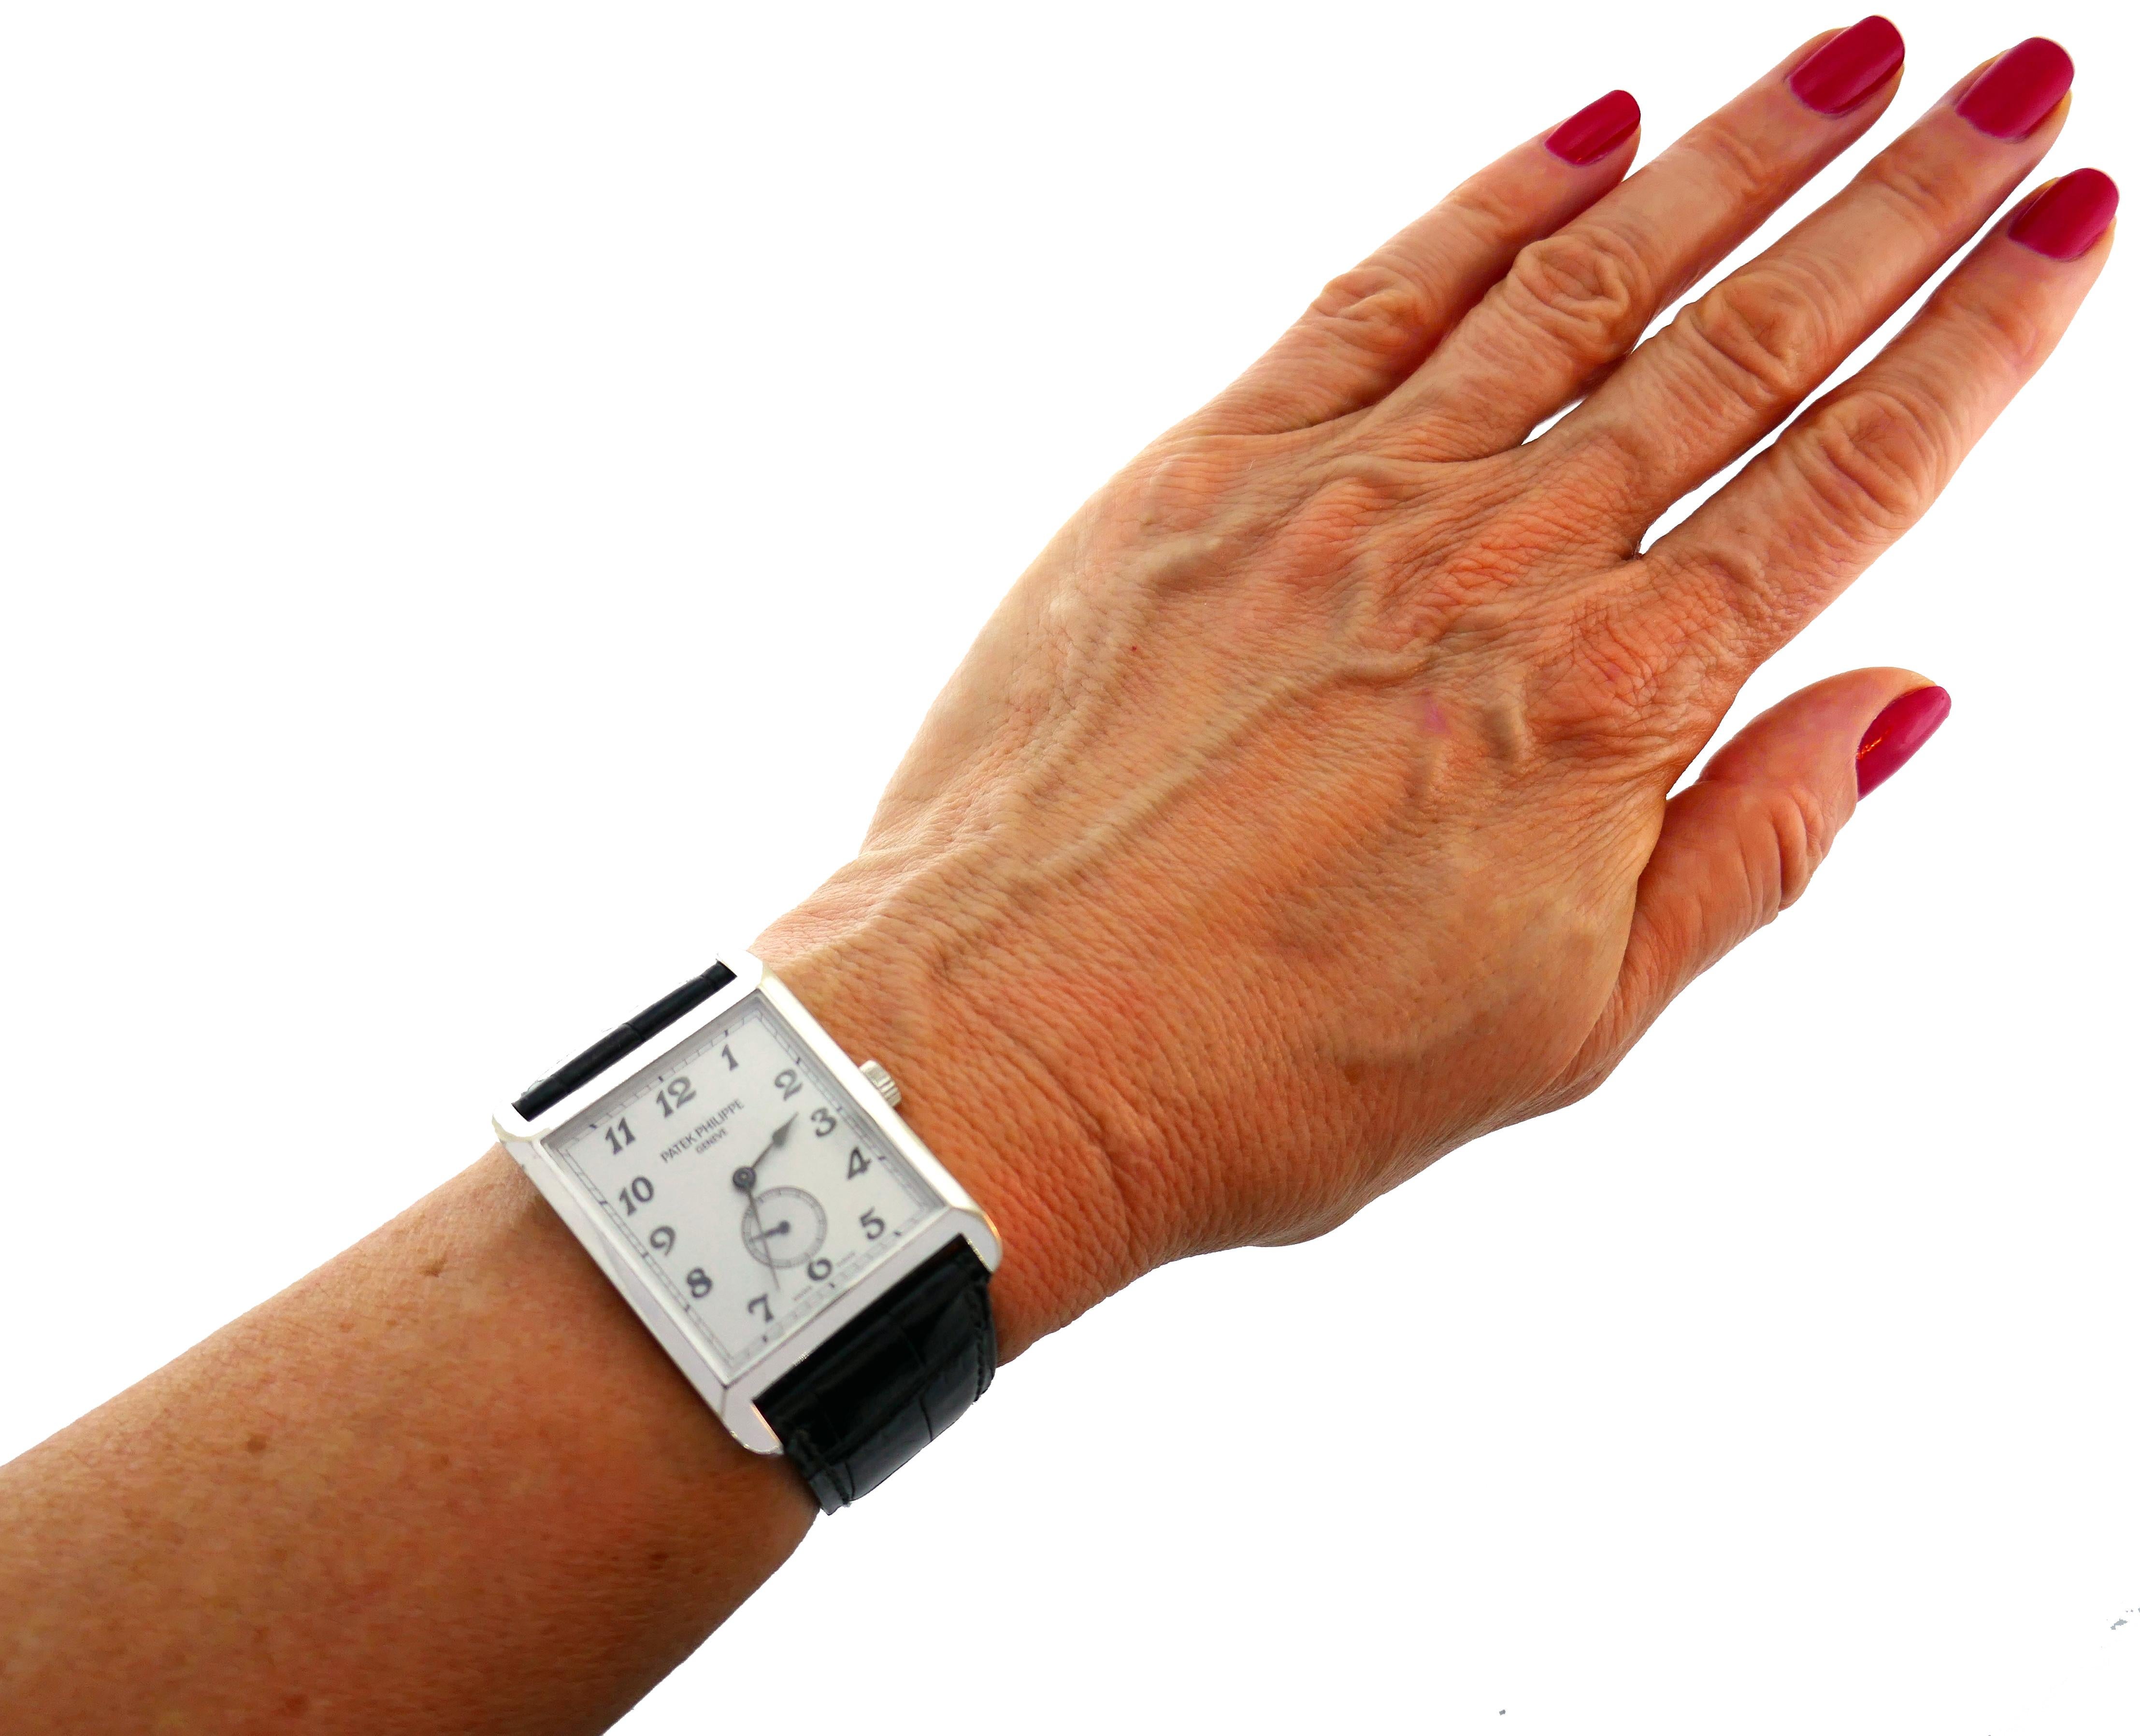 Klassische Unisex-Armbanduhr von Patek Philippe. Eleganter und unaufdringlicher Status-Zeitmesser. 
Die klassische und zeitlose Uhr ist eine großartige Ergänzung für Ihre Schmuck- und Accessoire-Kollektion.
Rechteckiges Gehäuse aus 18 Karat